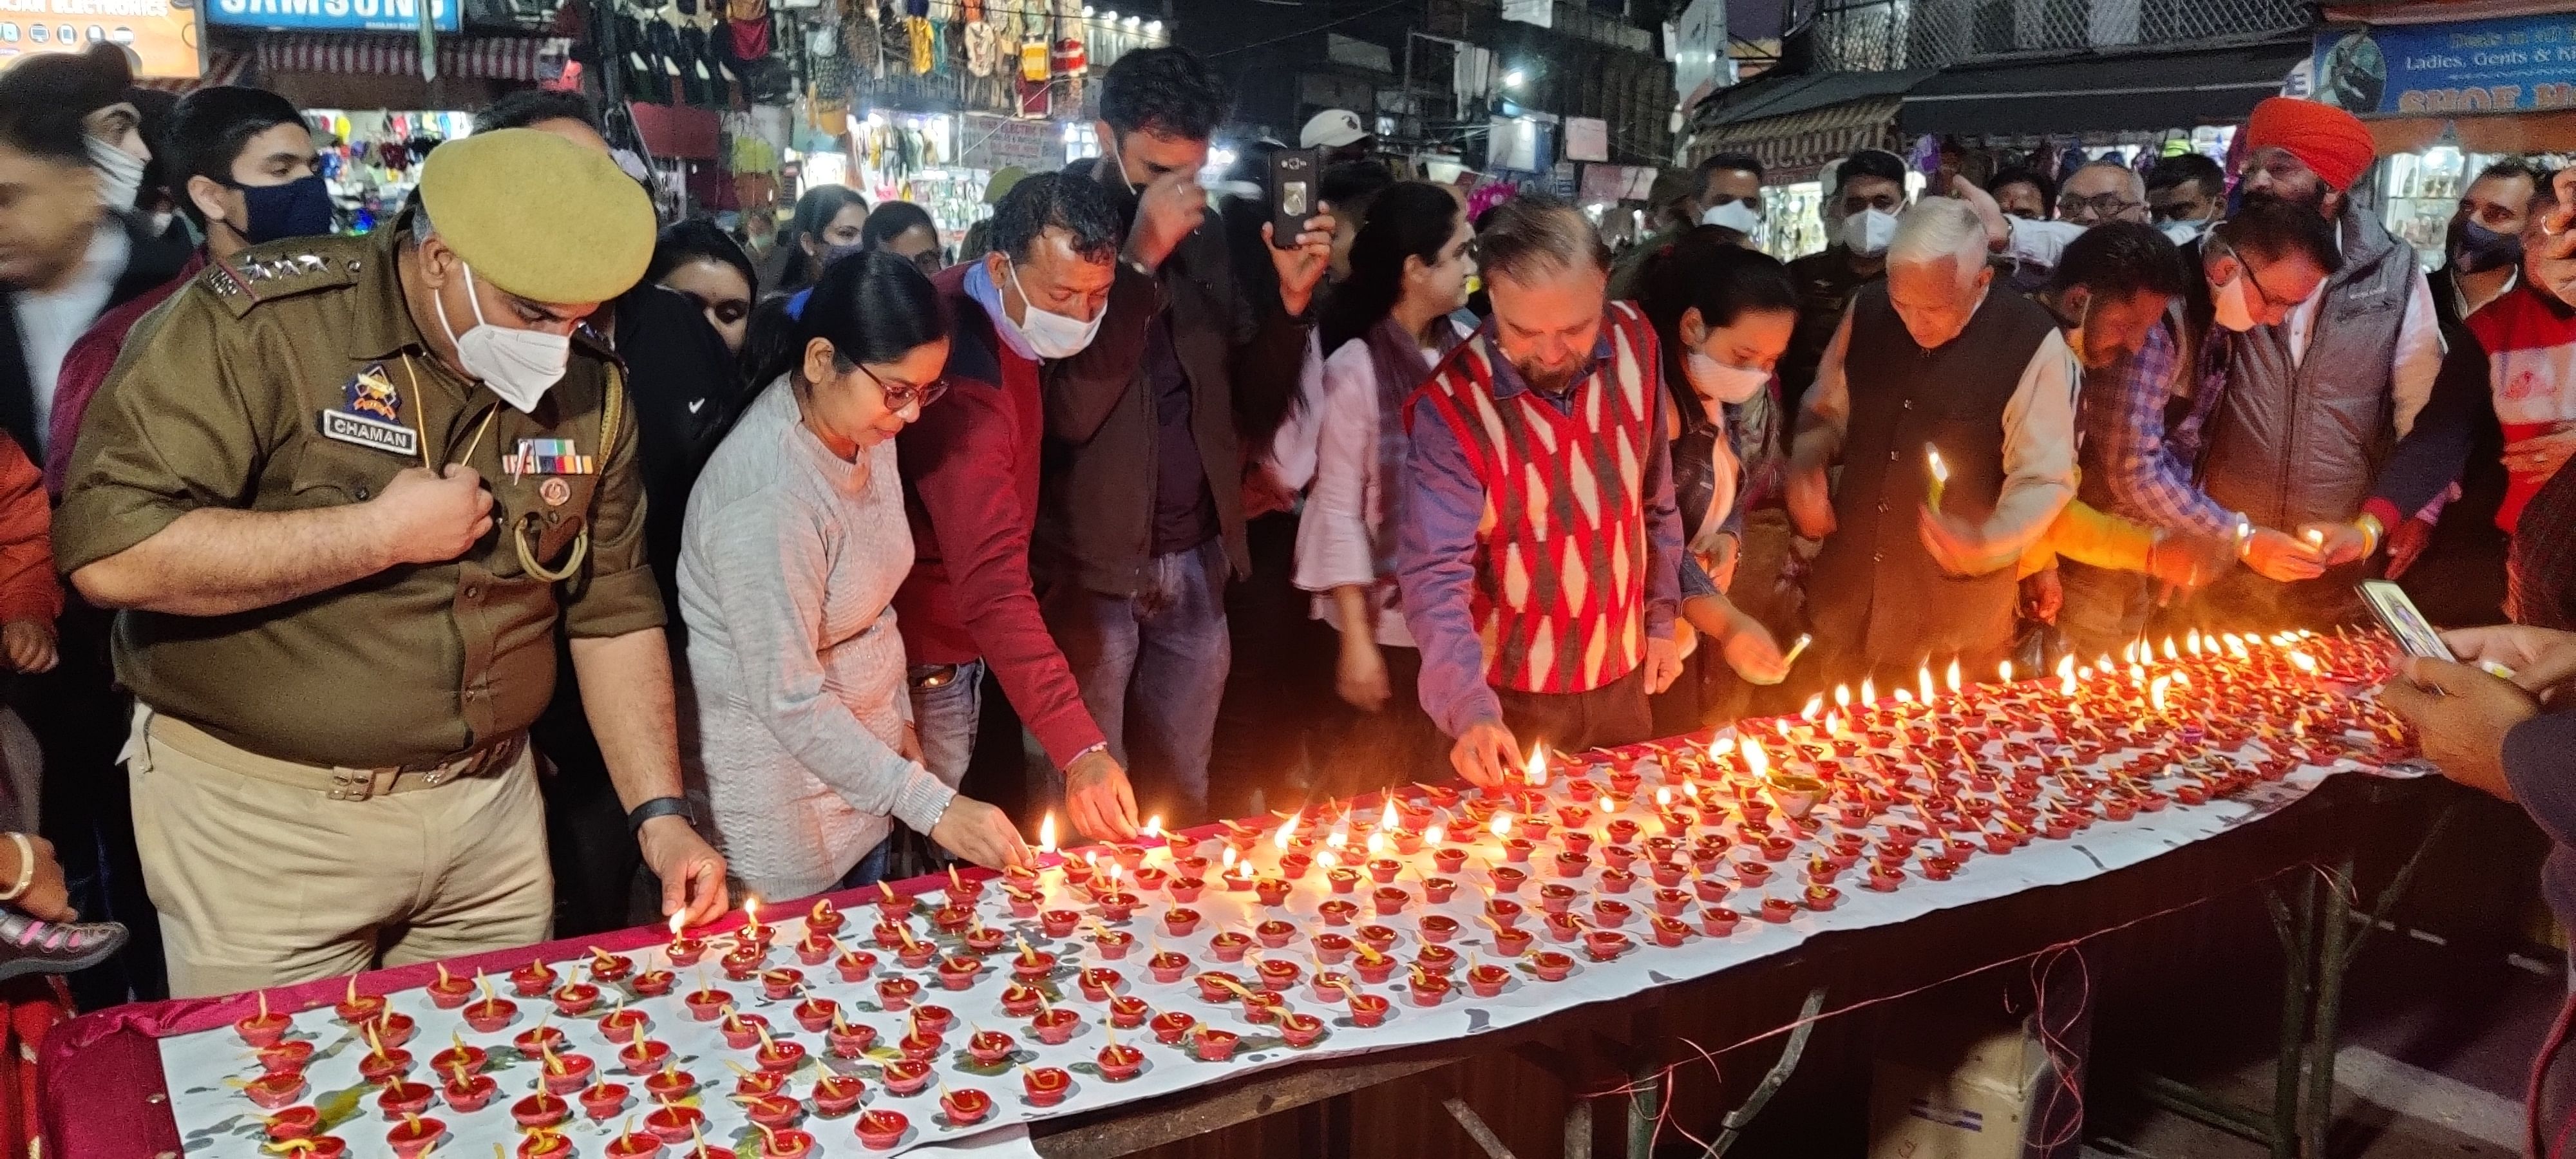 उधमपुर शहर के इंदिरा चौक पर शहीदों की याद में दीये जलाते शहरवासी